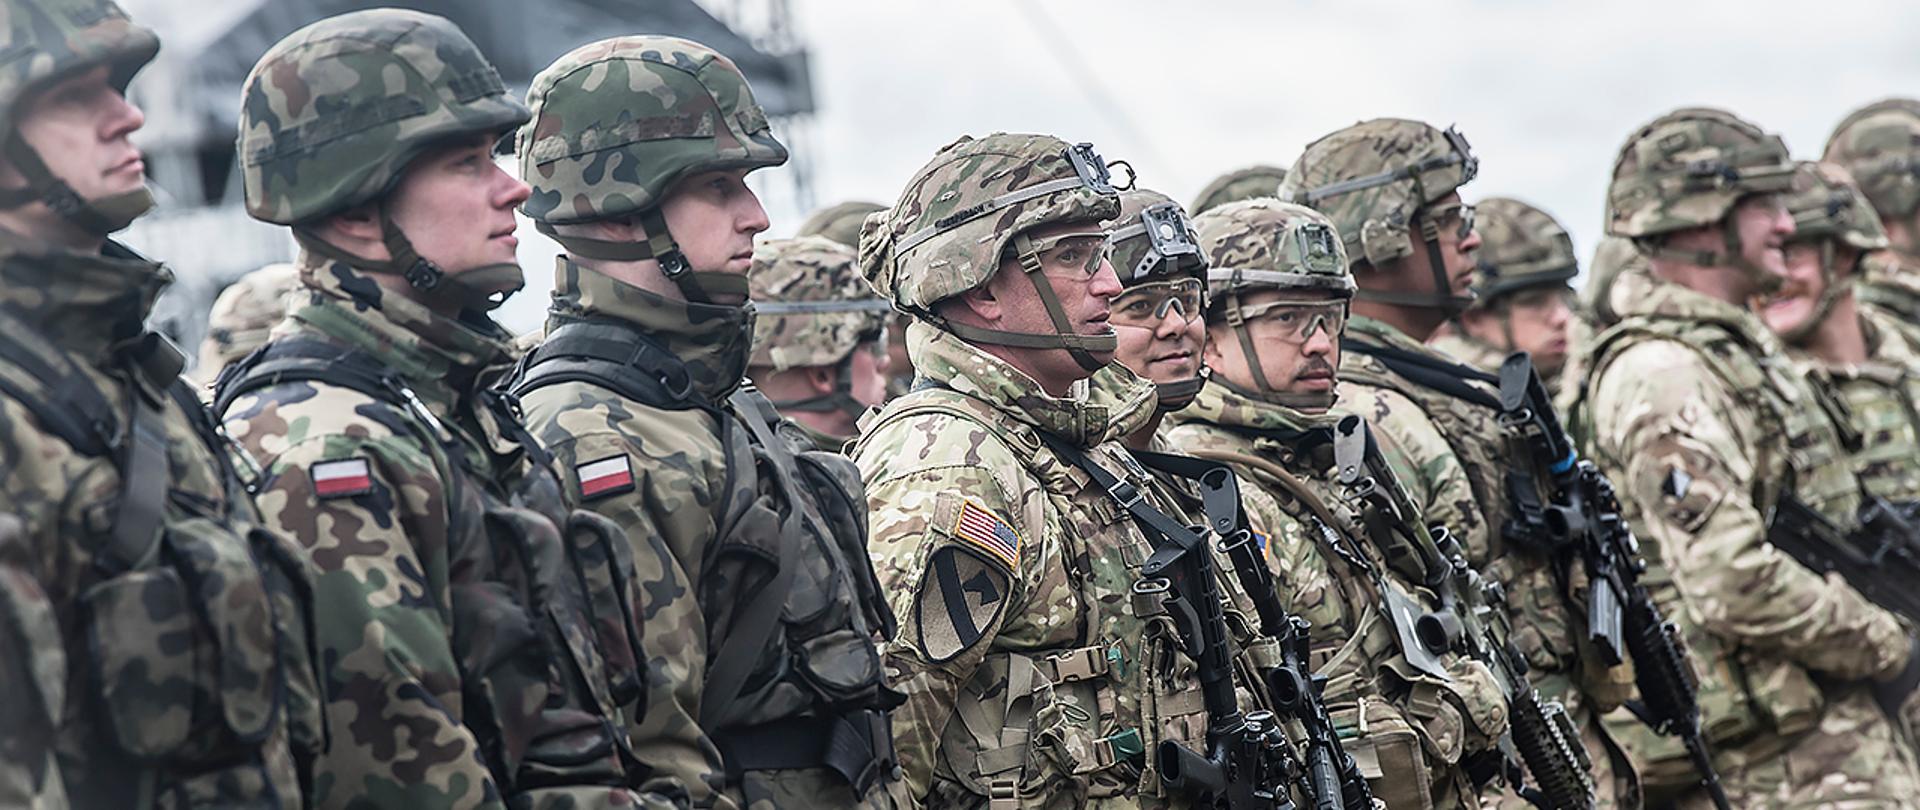 Ponad połowa Polaków popiera starania polskiego rządu o utworzenie stałej bazy wojsk amerykańskich w naszym kraju oraz twierdzi, że obecność baz zwiększy poziom bezpieczeństwa.